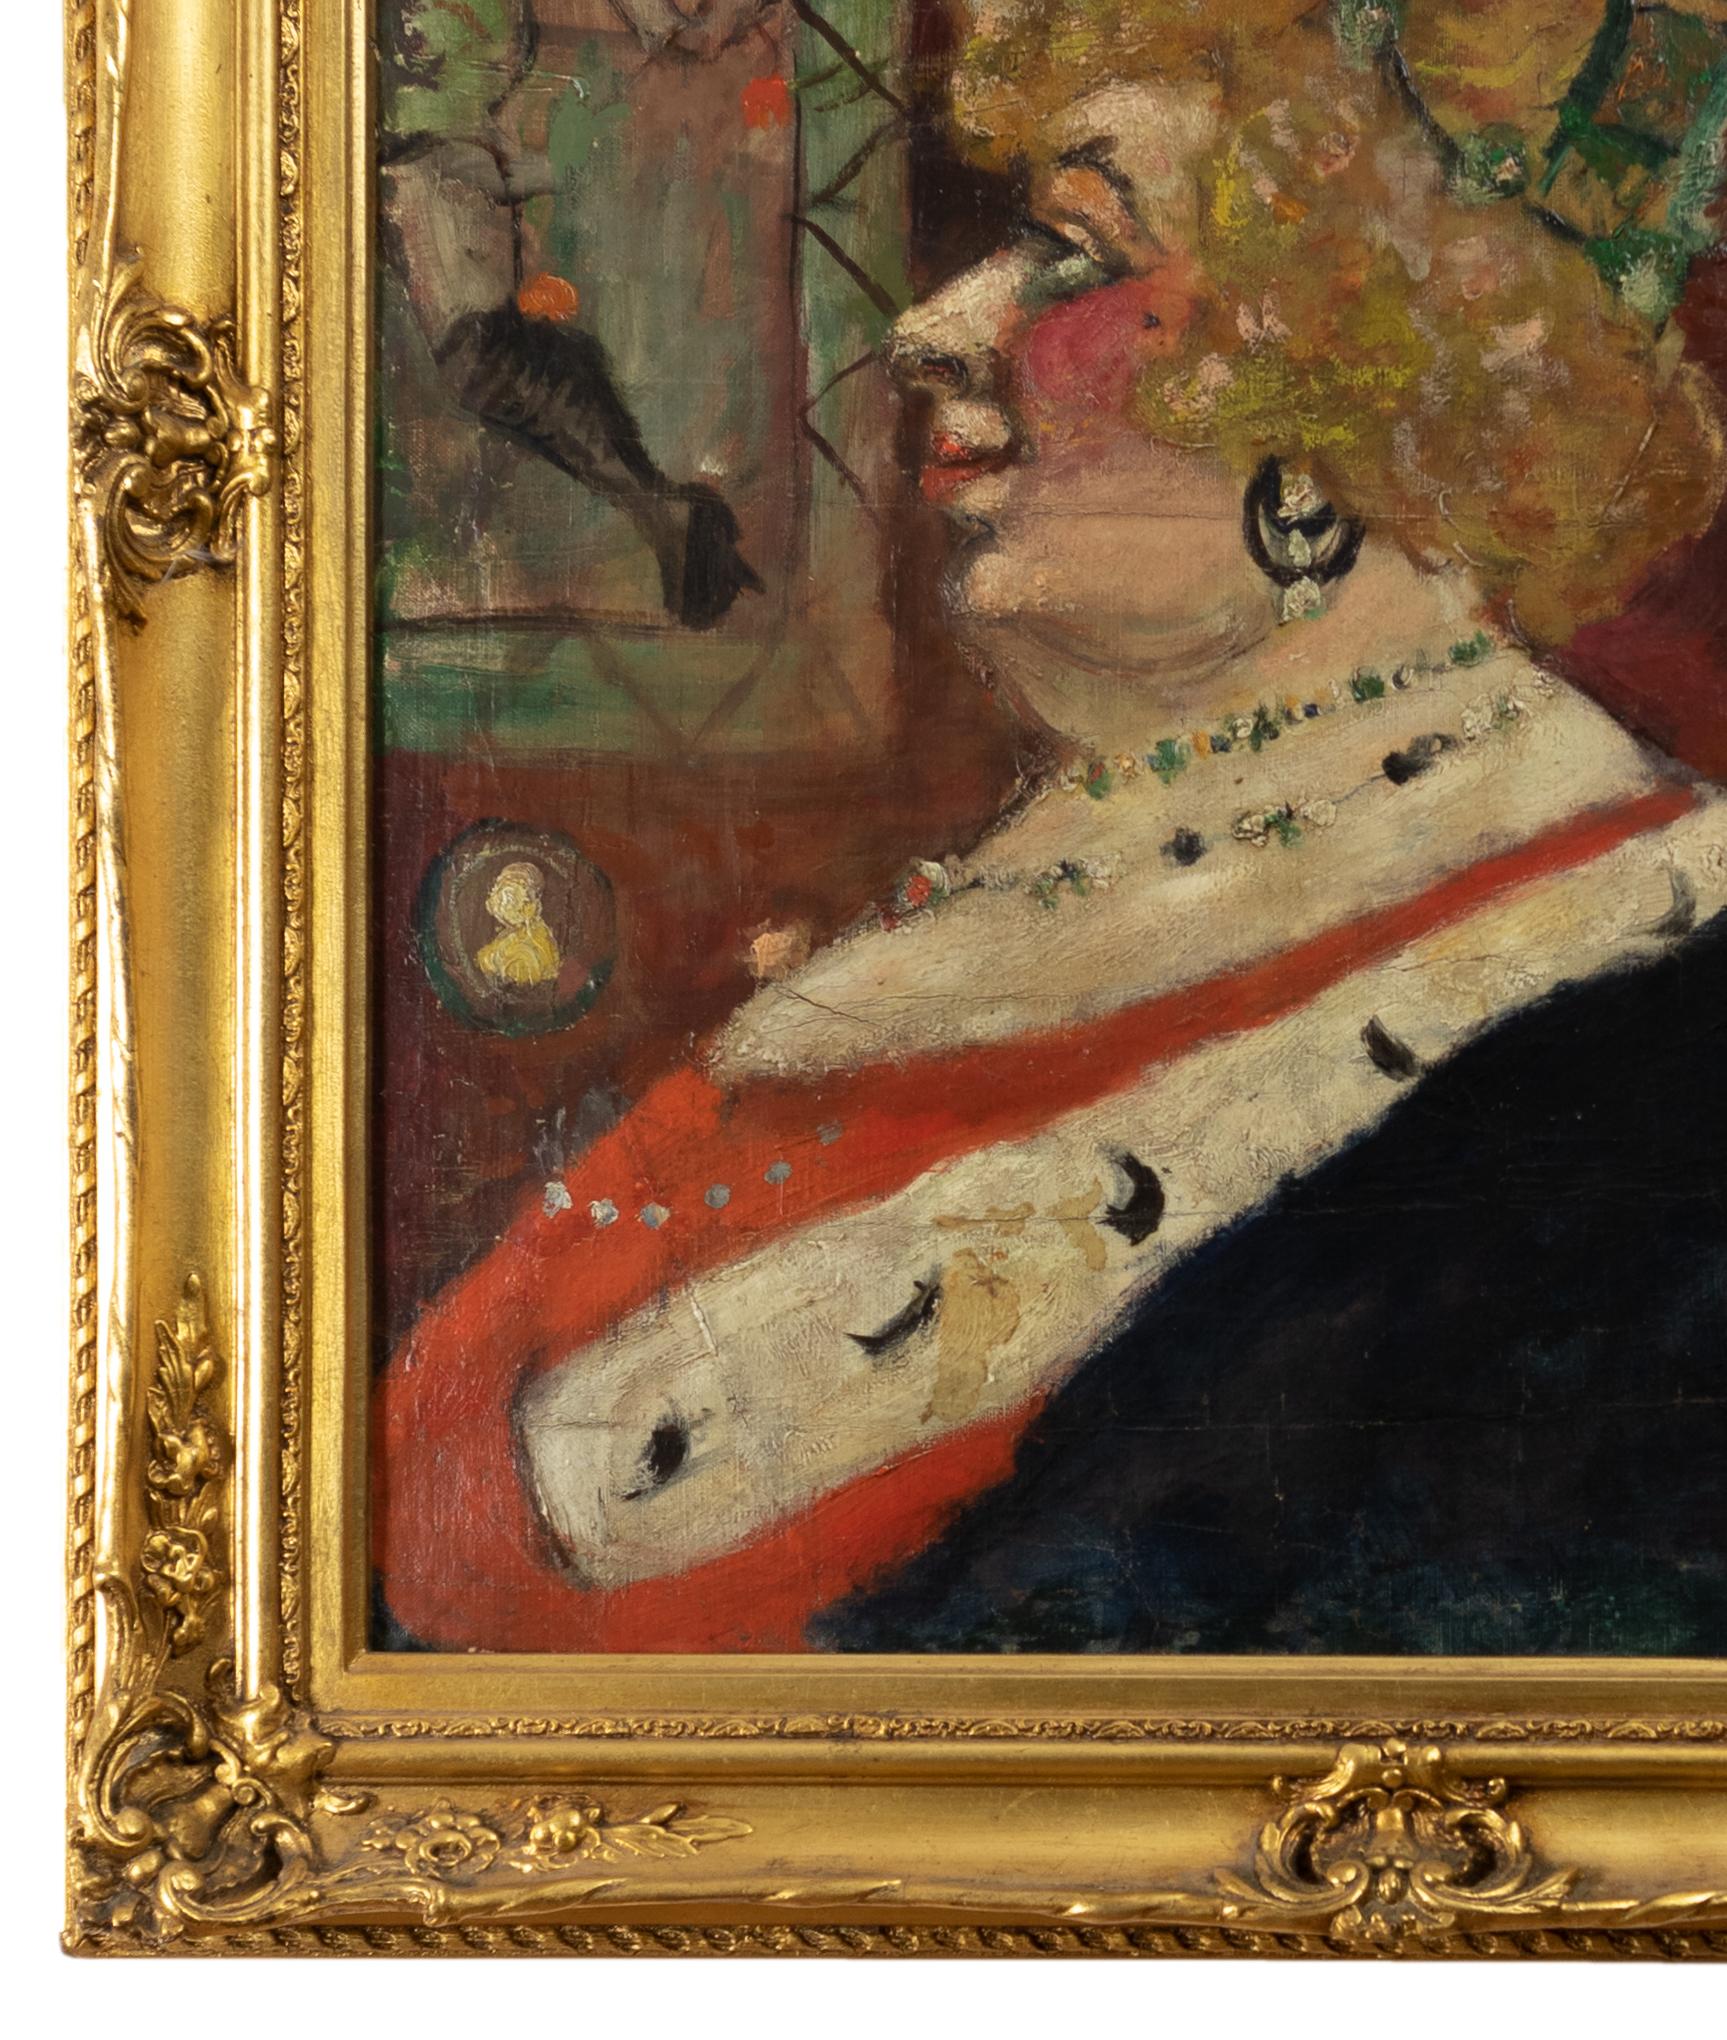 Ein impressionistisches Gemälde der Belle Epoque, das eine reich geschmückte Frau zeigt, die von Gemälden an der Wand im Hintergrund umgeben ist und mit 